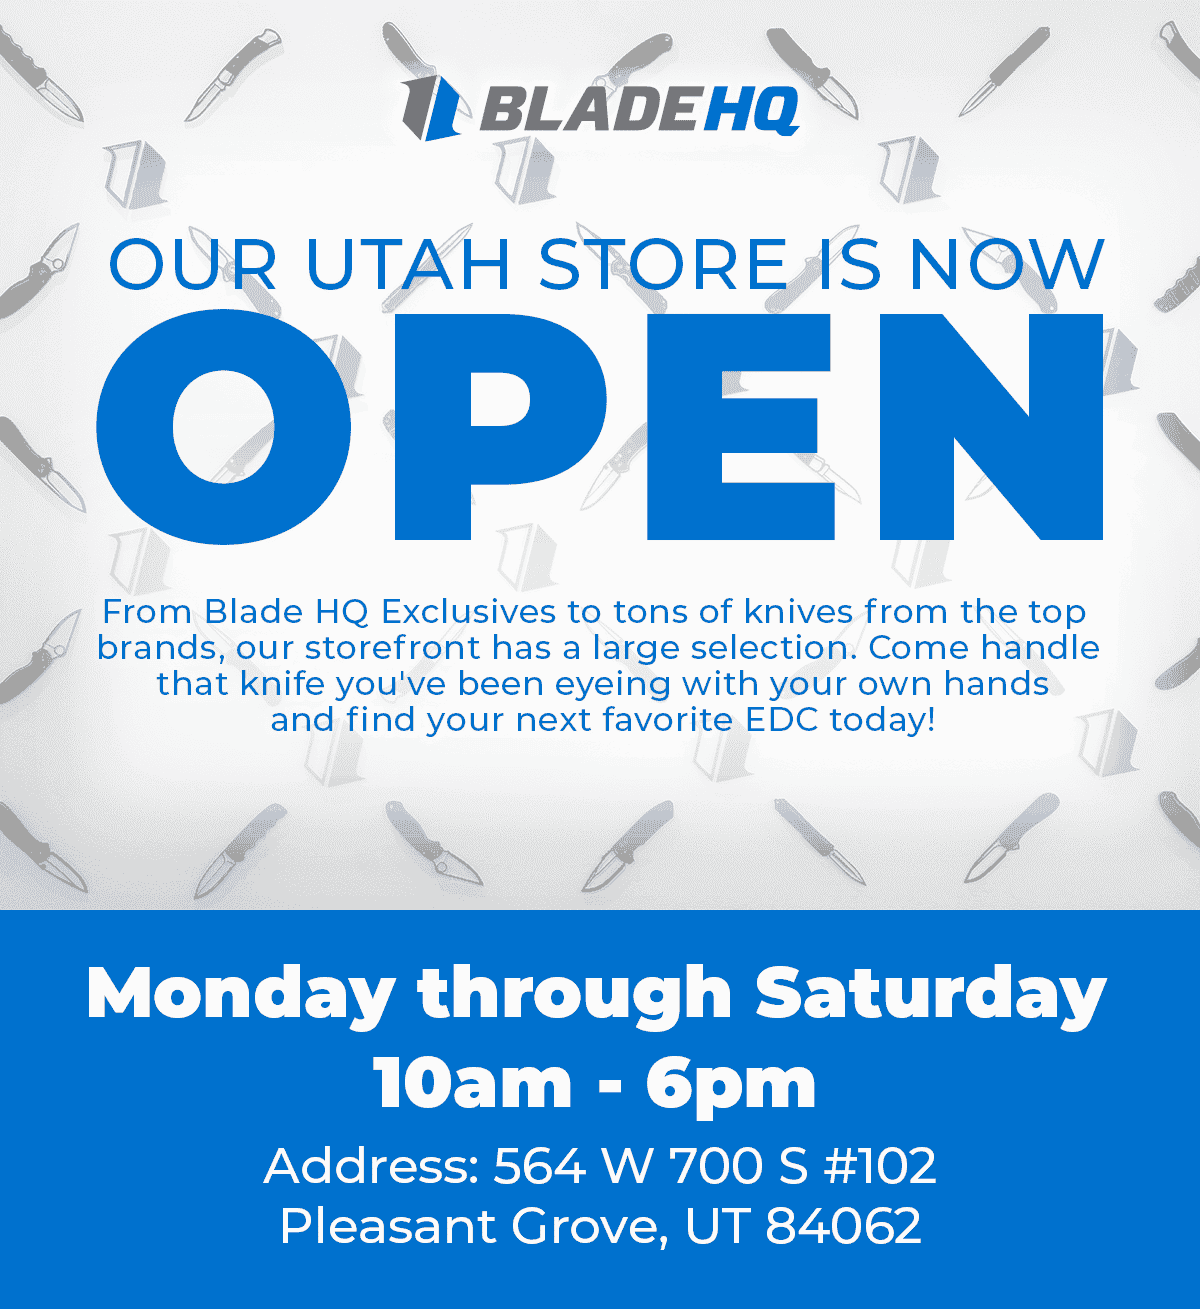 Utah storefront is open!